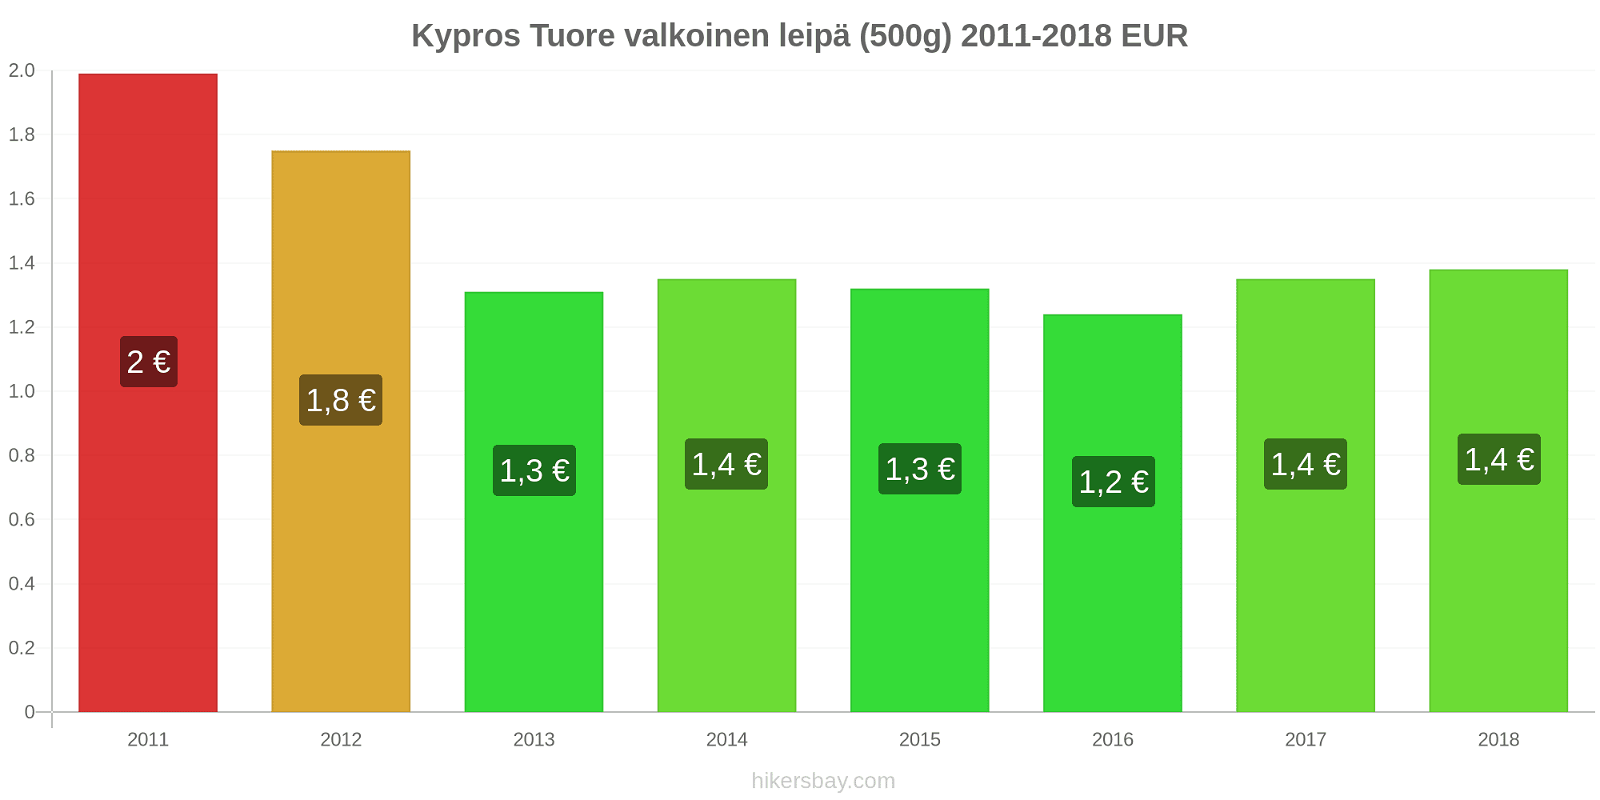 Kypros hintojen muutokset Tuore valkoinen leipä (500g) hikersbay.com